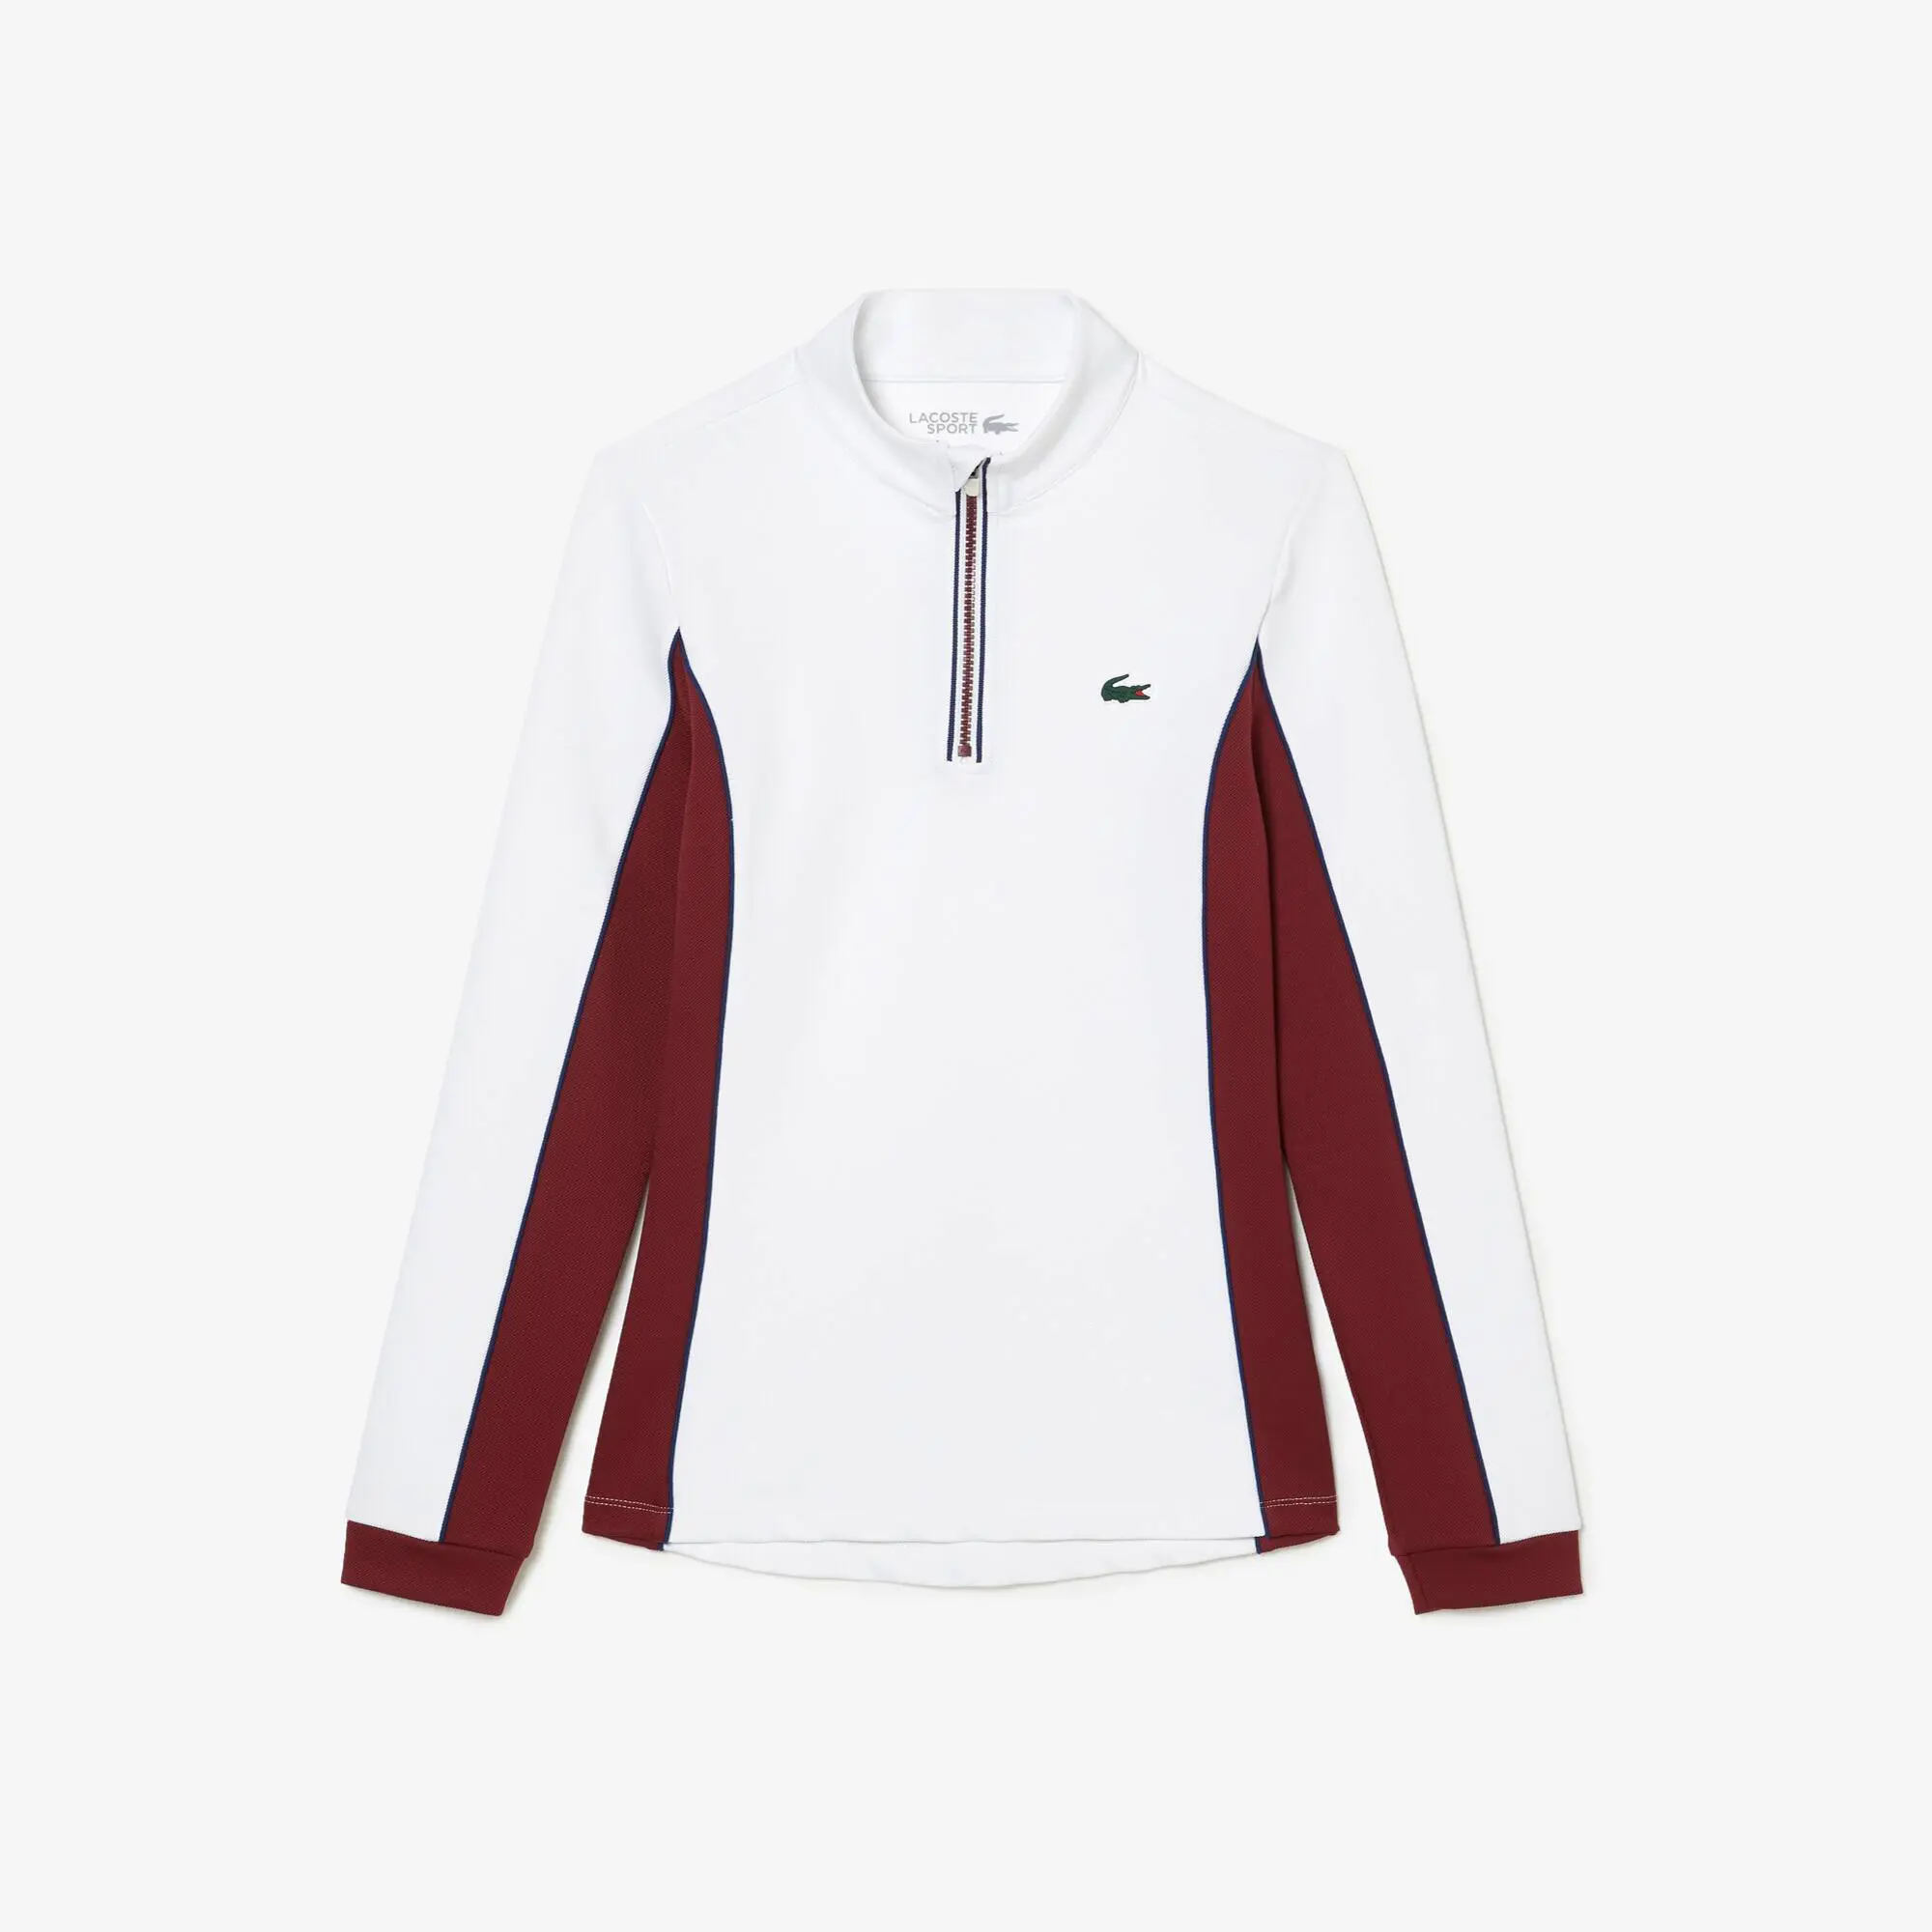 Lacoste Slim Fit Contrast Sleeve Tennis Sweatshirt. 1